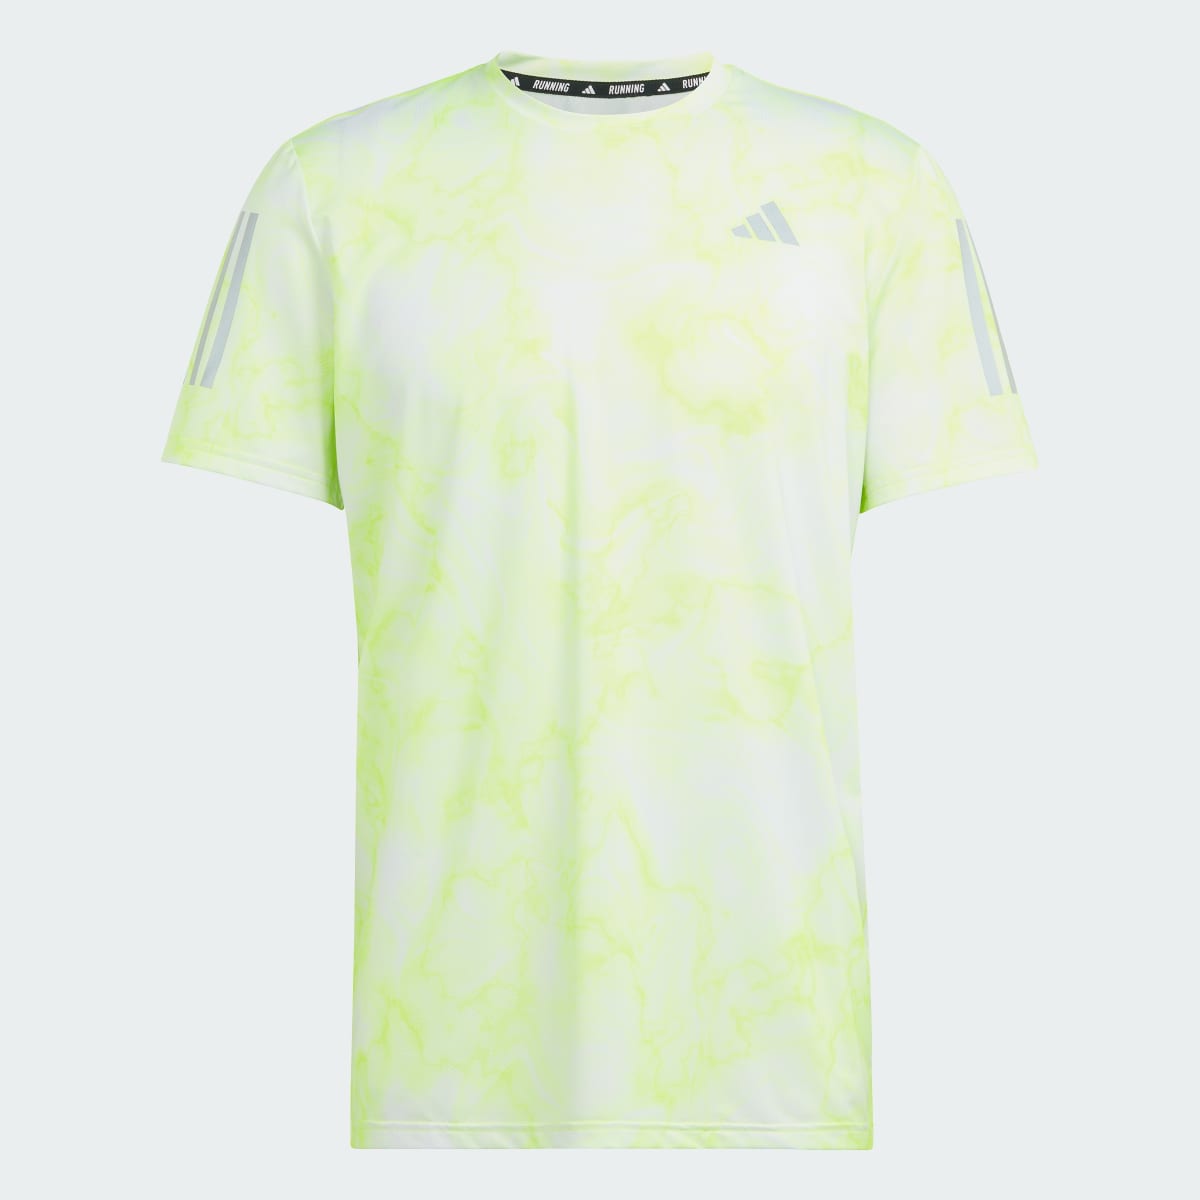 Adidas Own the Run Allover Print T-Shirt. 5